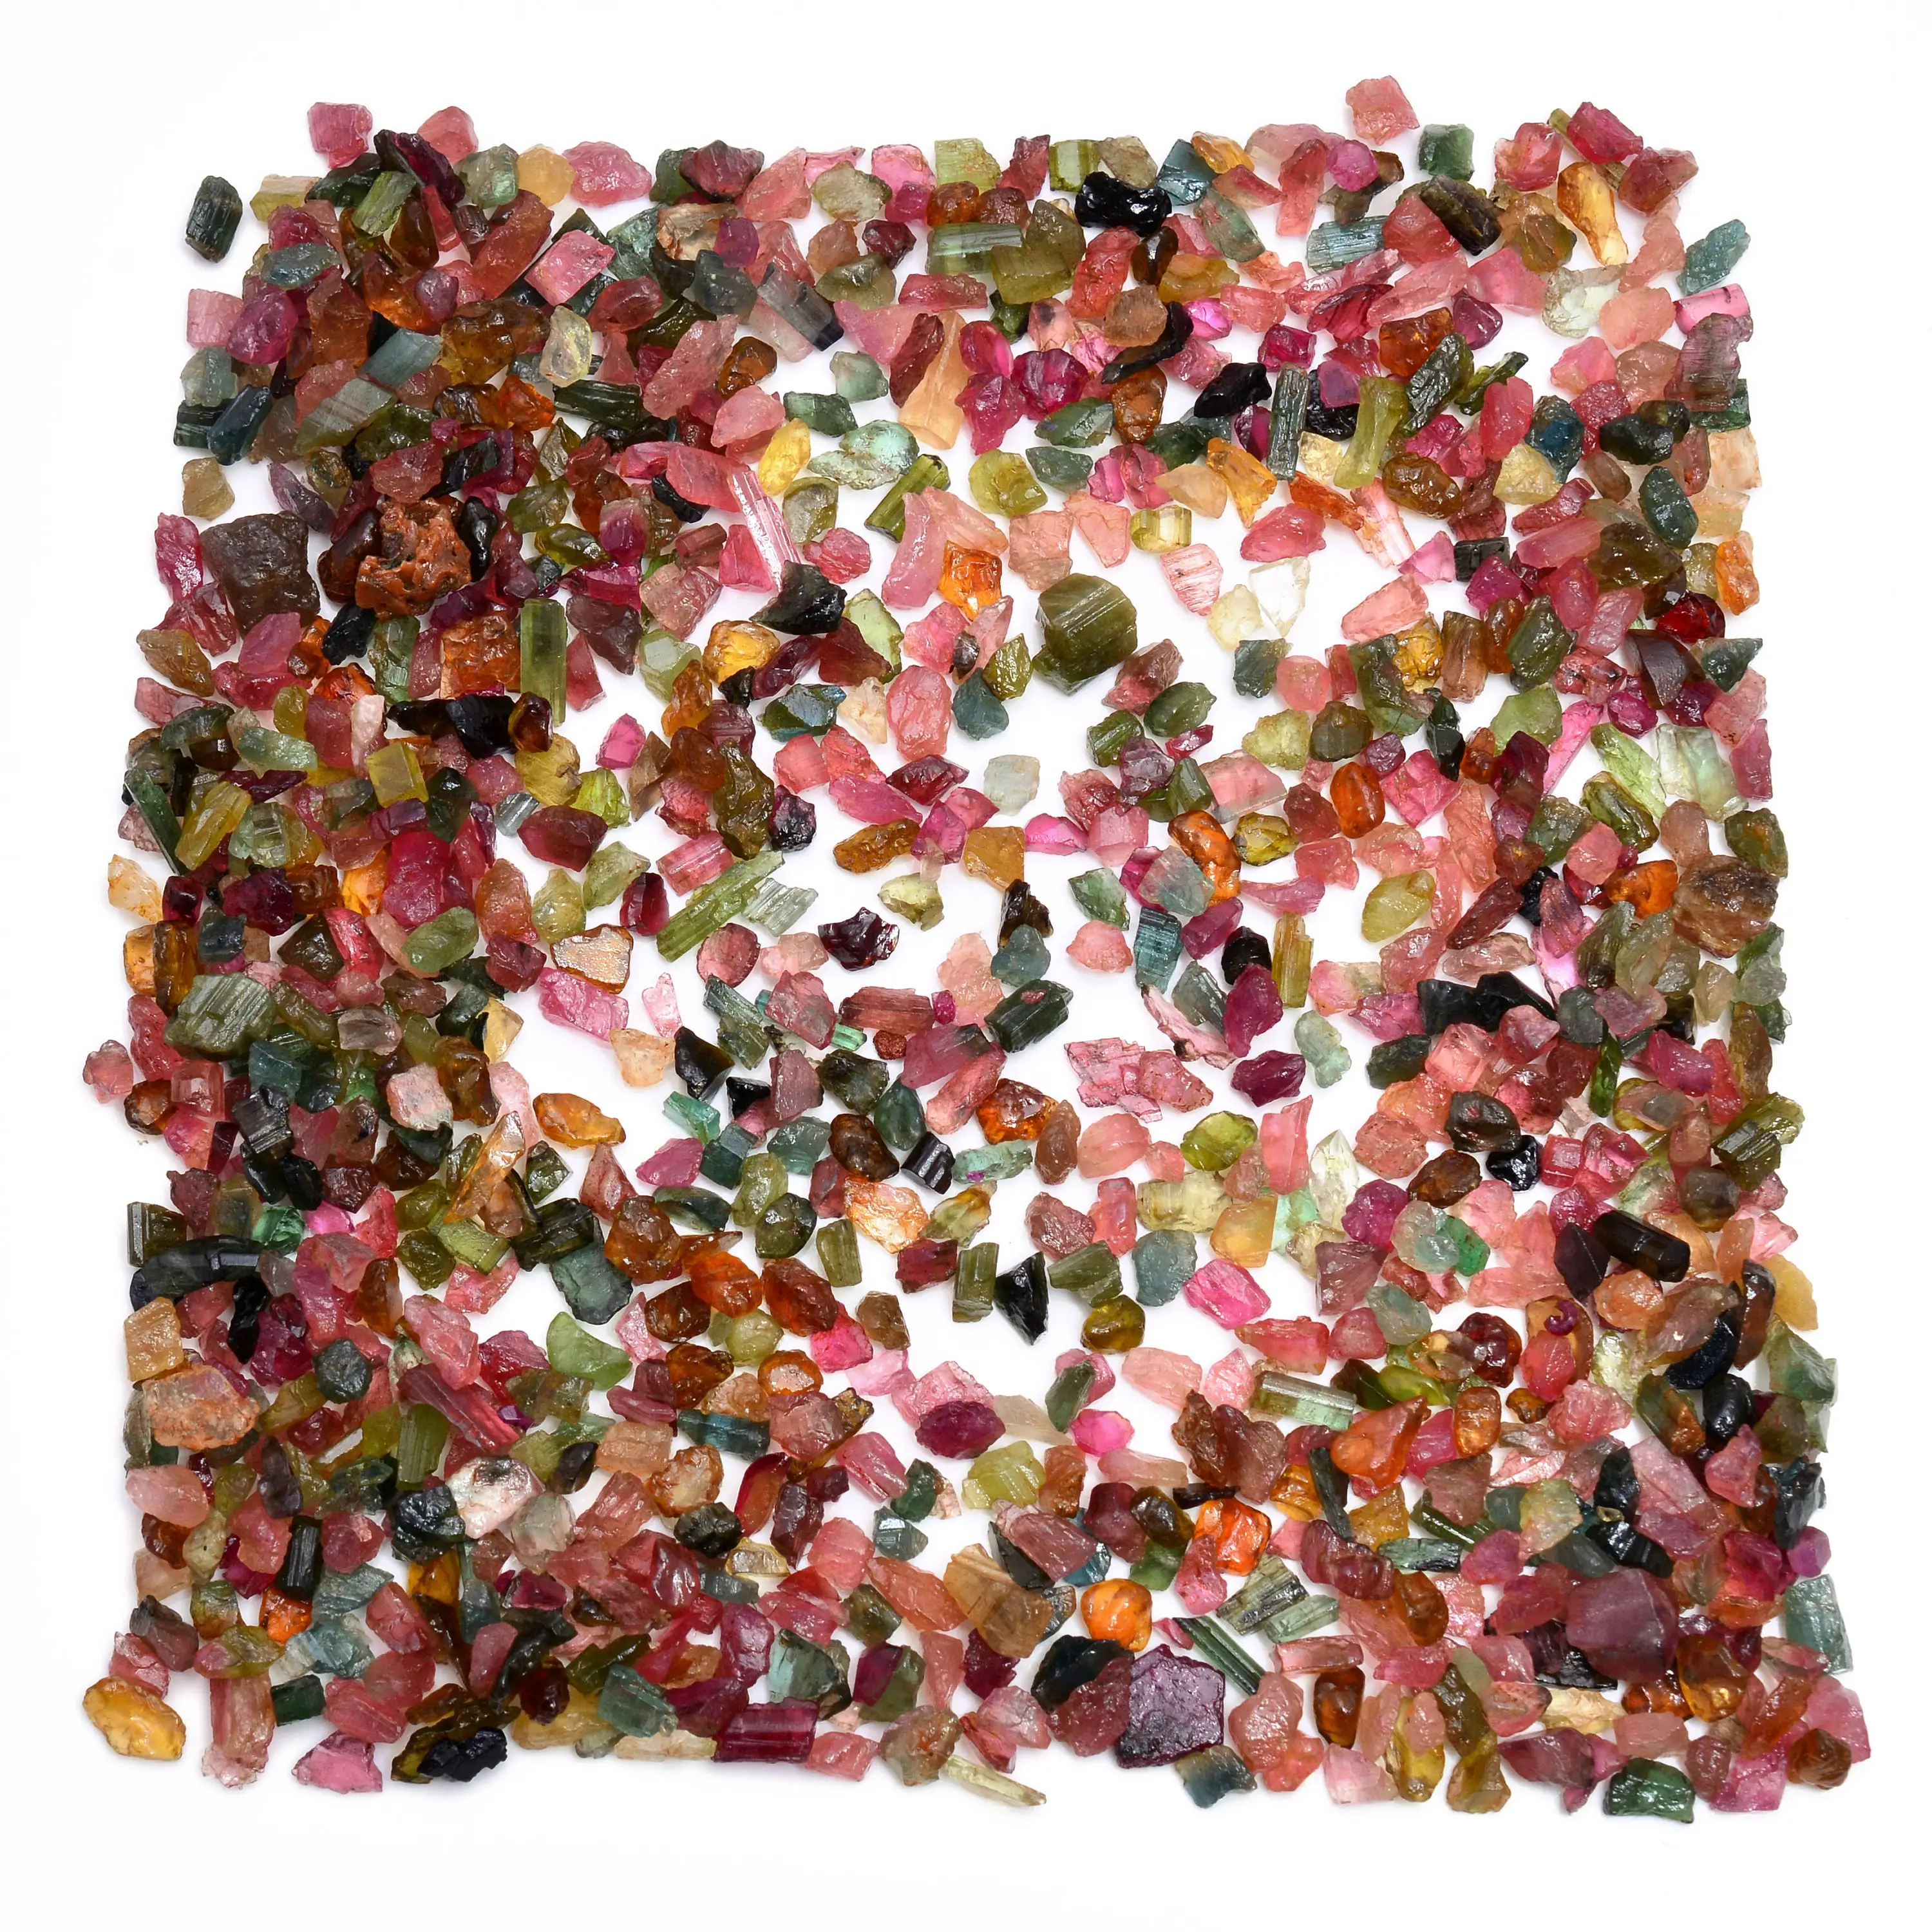 AAA + qualità naturale Multi zaffiro grezza pietra preziosa di colore primario rosa zaffiro pietra grezza pietra sciolta per la creazione di gioielli